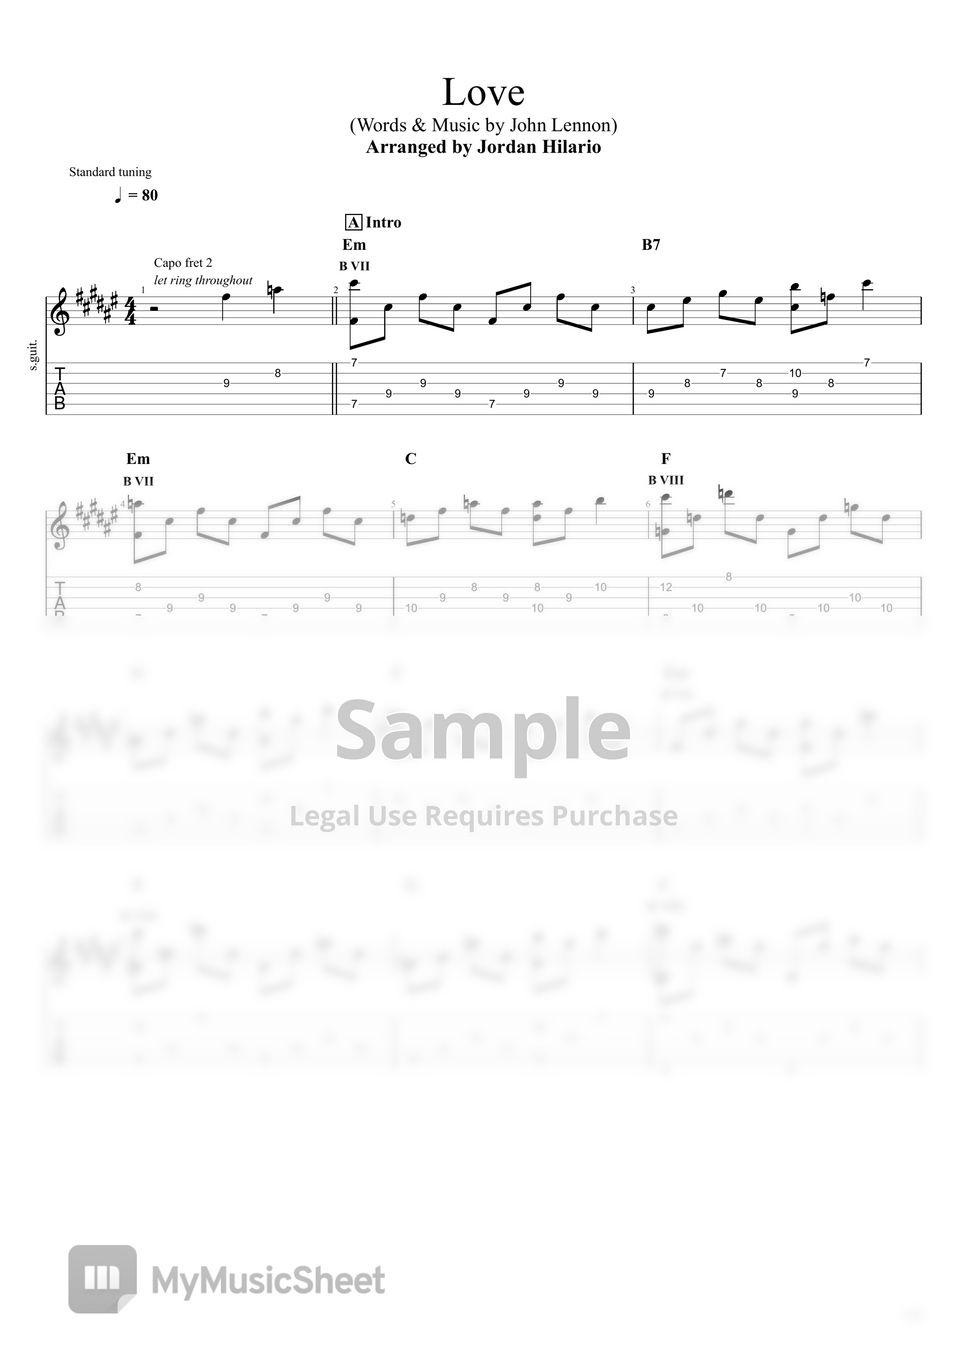 John Lennon - Love Fingerstyle Tab - Fingerstyle Guitar by Jordan Hilario